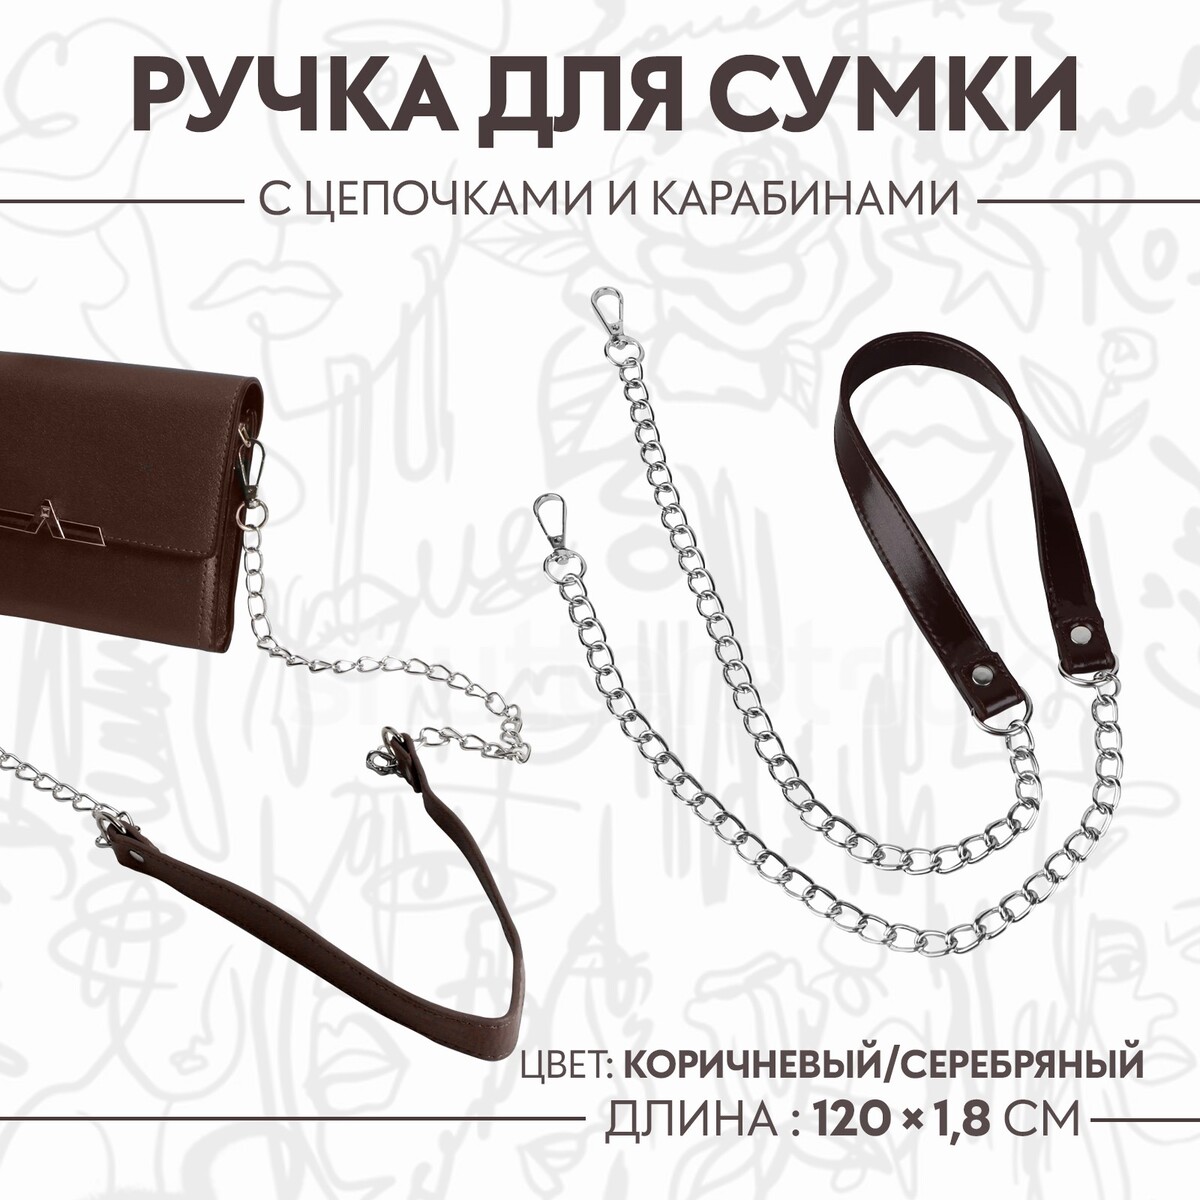 Ручка для сумки, с цепочками и карабинами, 120 × 1,8 см, цвет коричневый ручка шнурок для сумки с карабинами 120 × 0 6 см коричневый